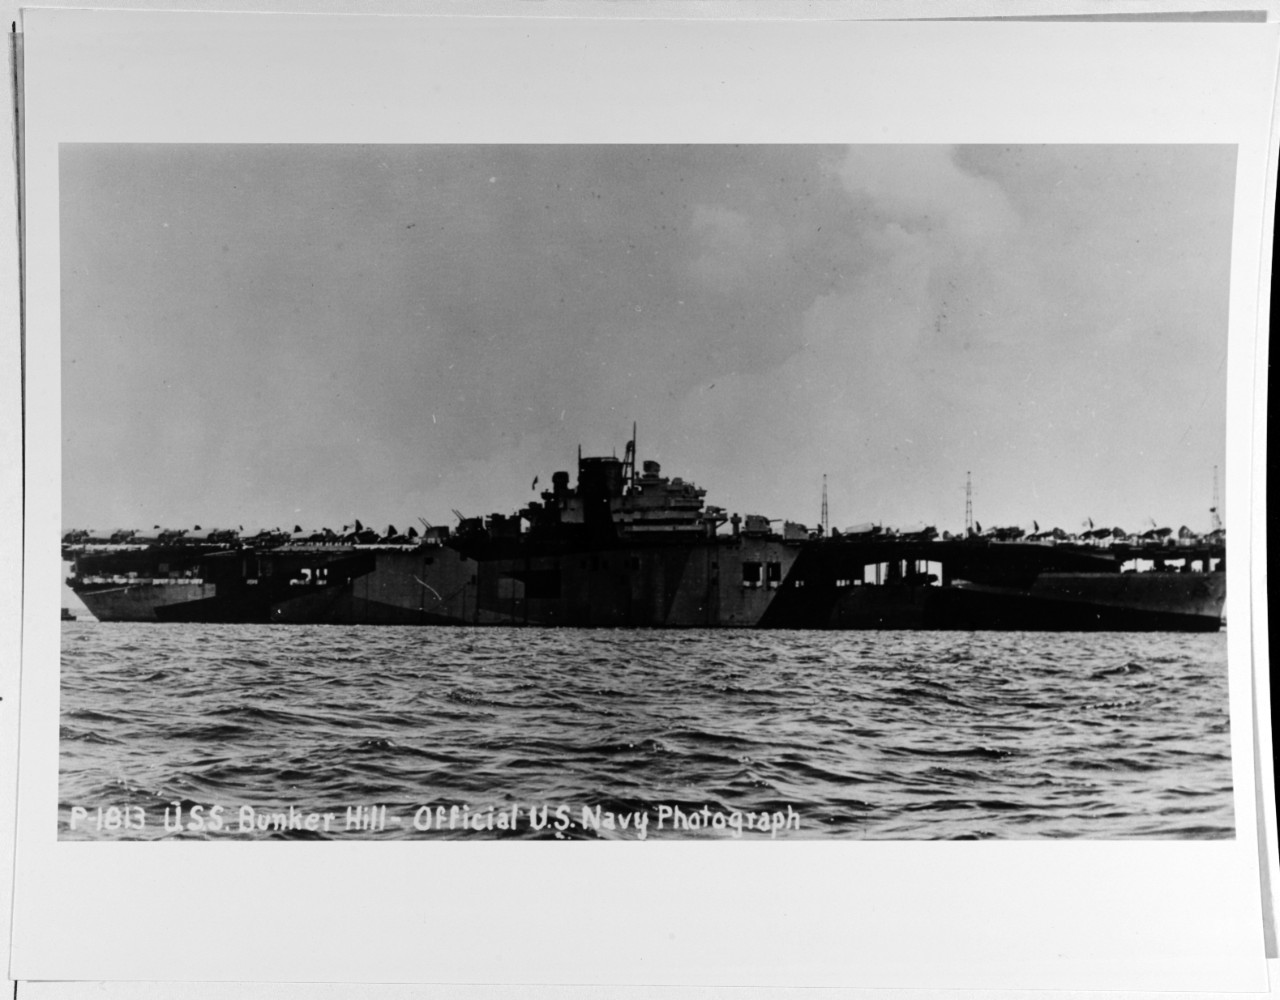 USS BUNKER HILL (CV-17)